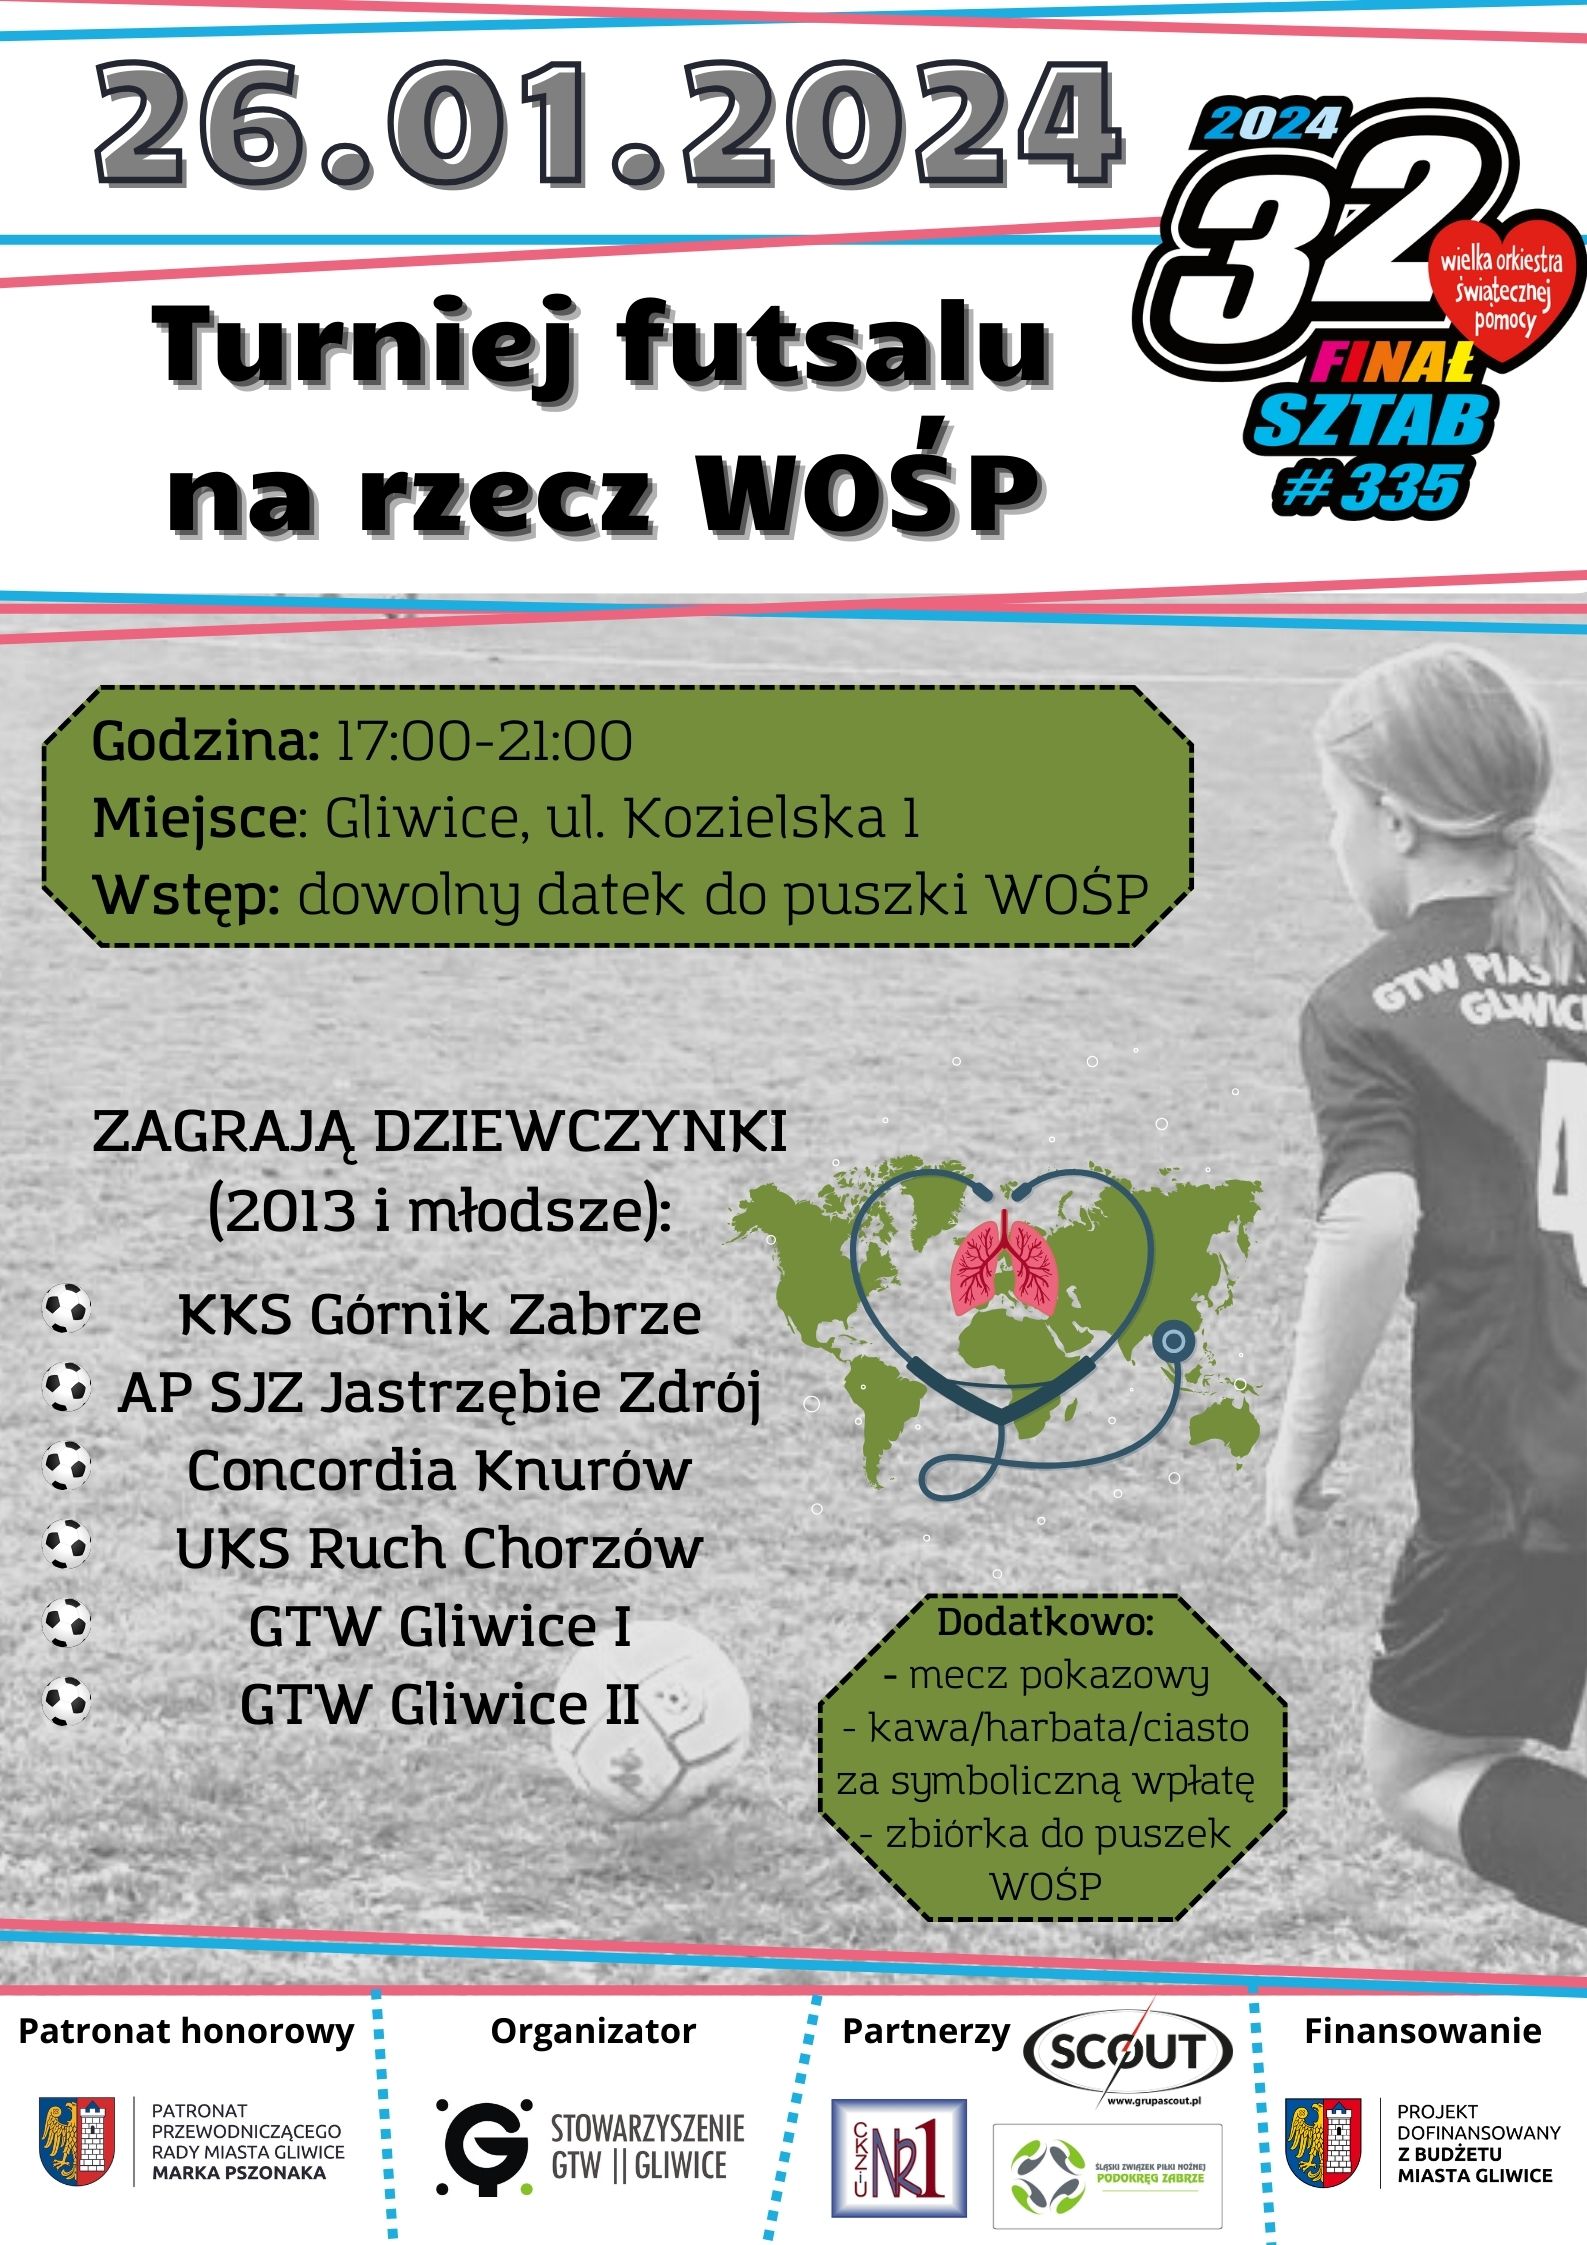 Plakat promujący Turniej Futsalu na rzecz WOŚP